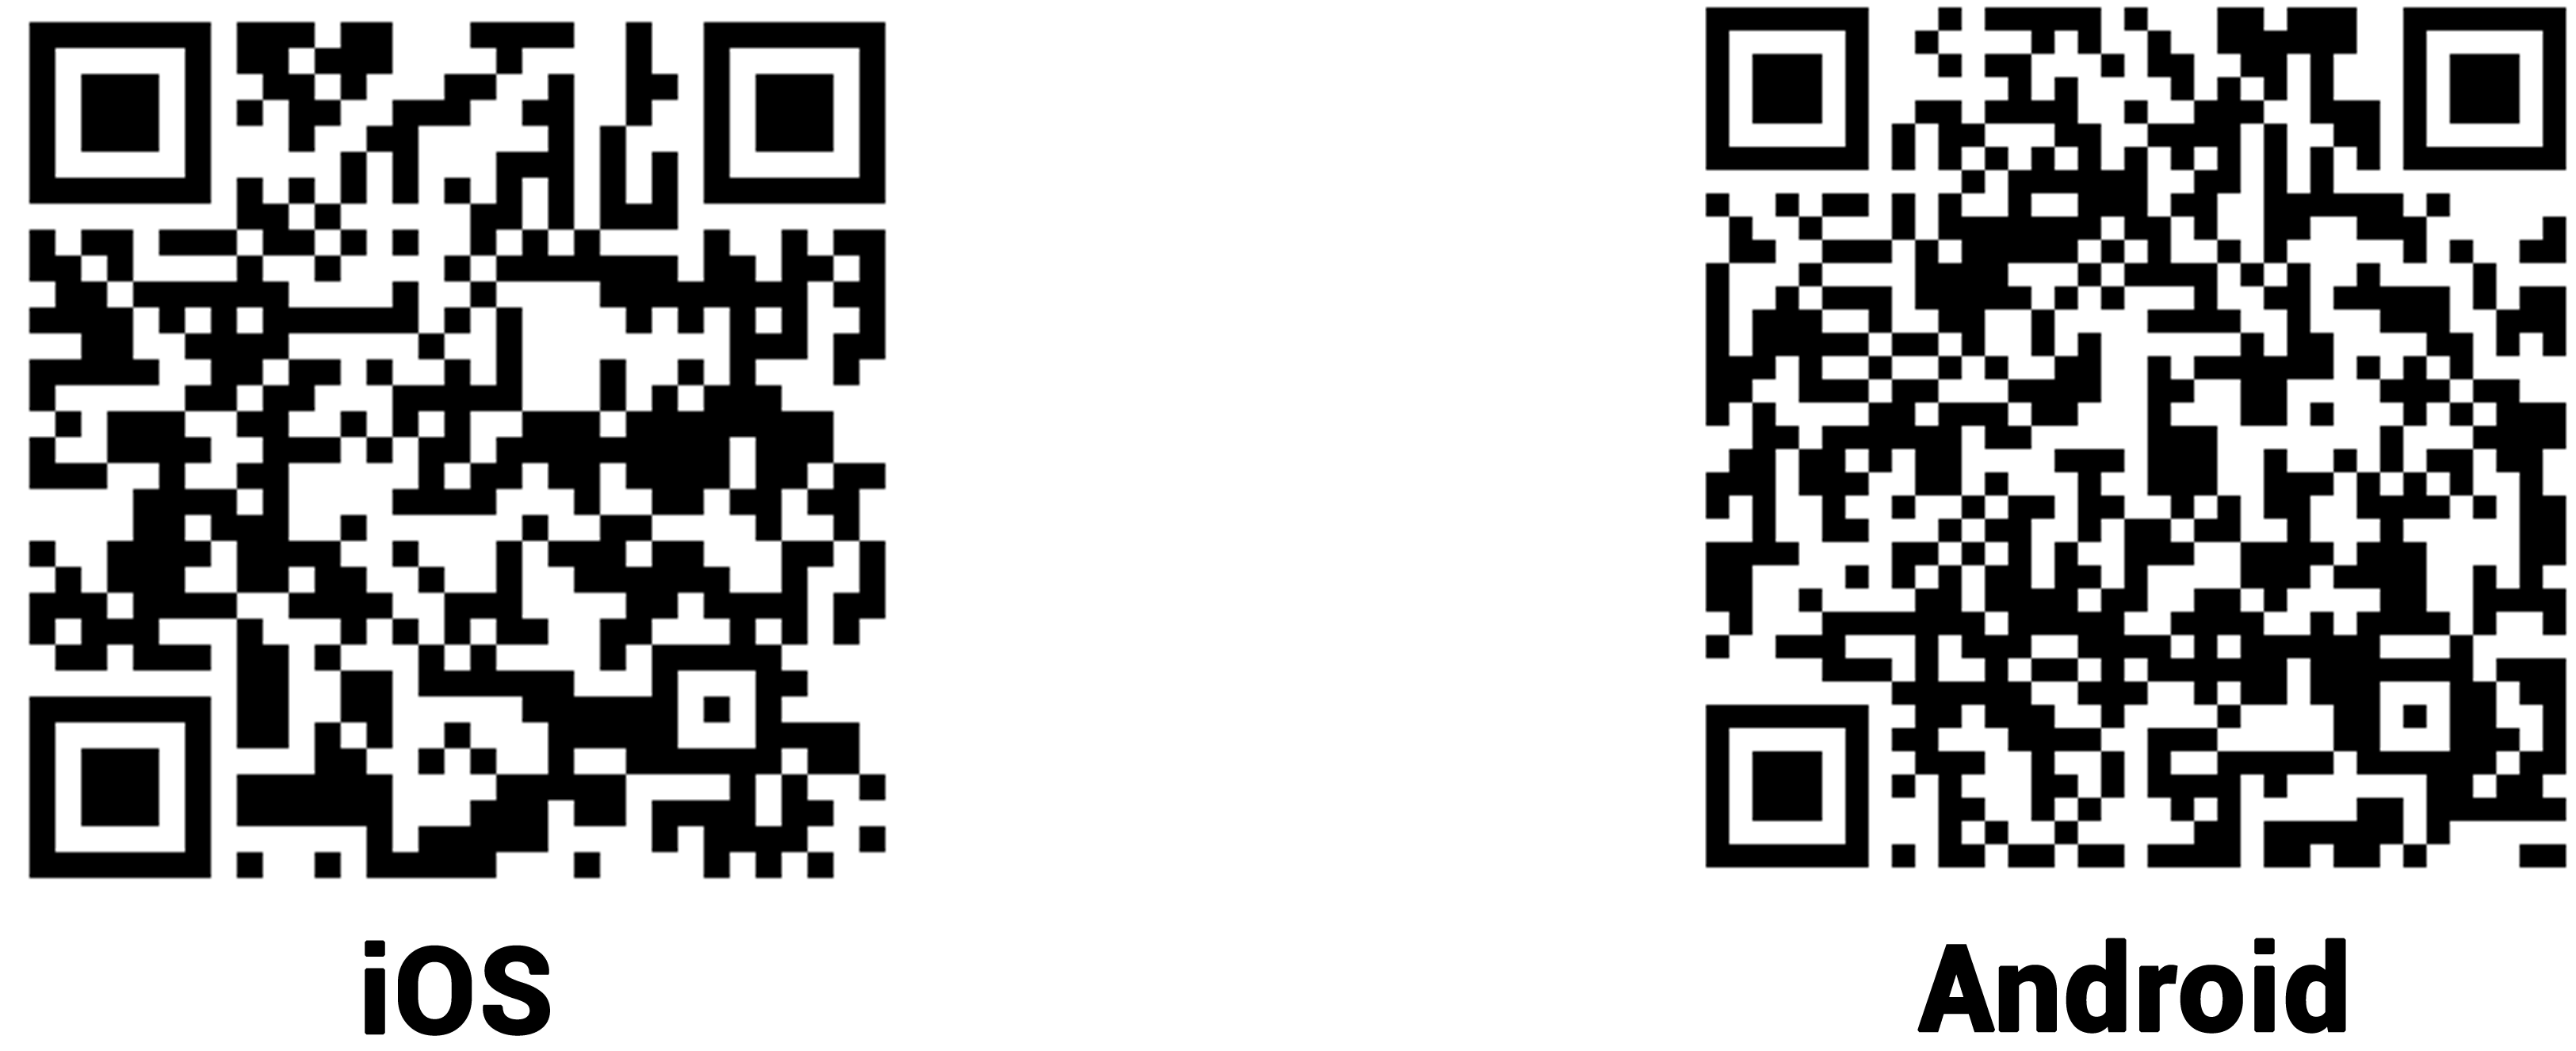 Código QR para descargar al aplicación móvil de Moodle